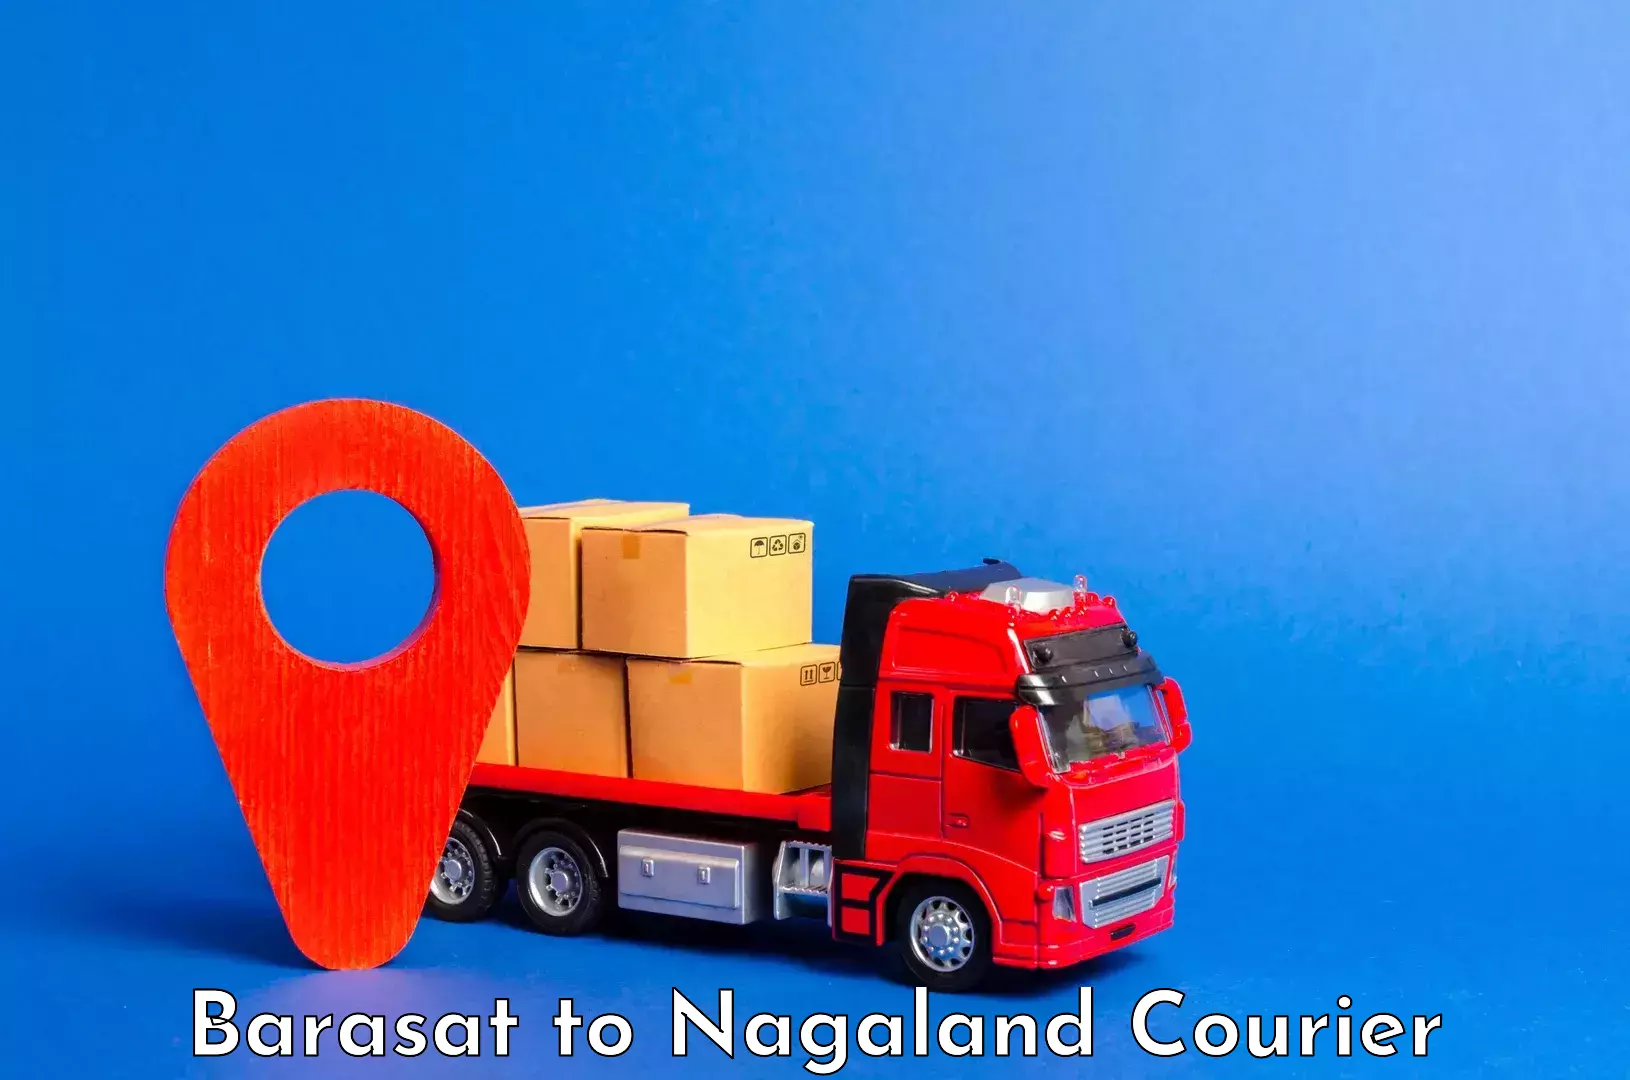 Comprehensive baggage service Barasat to Nagaland